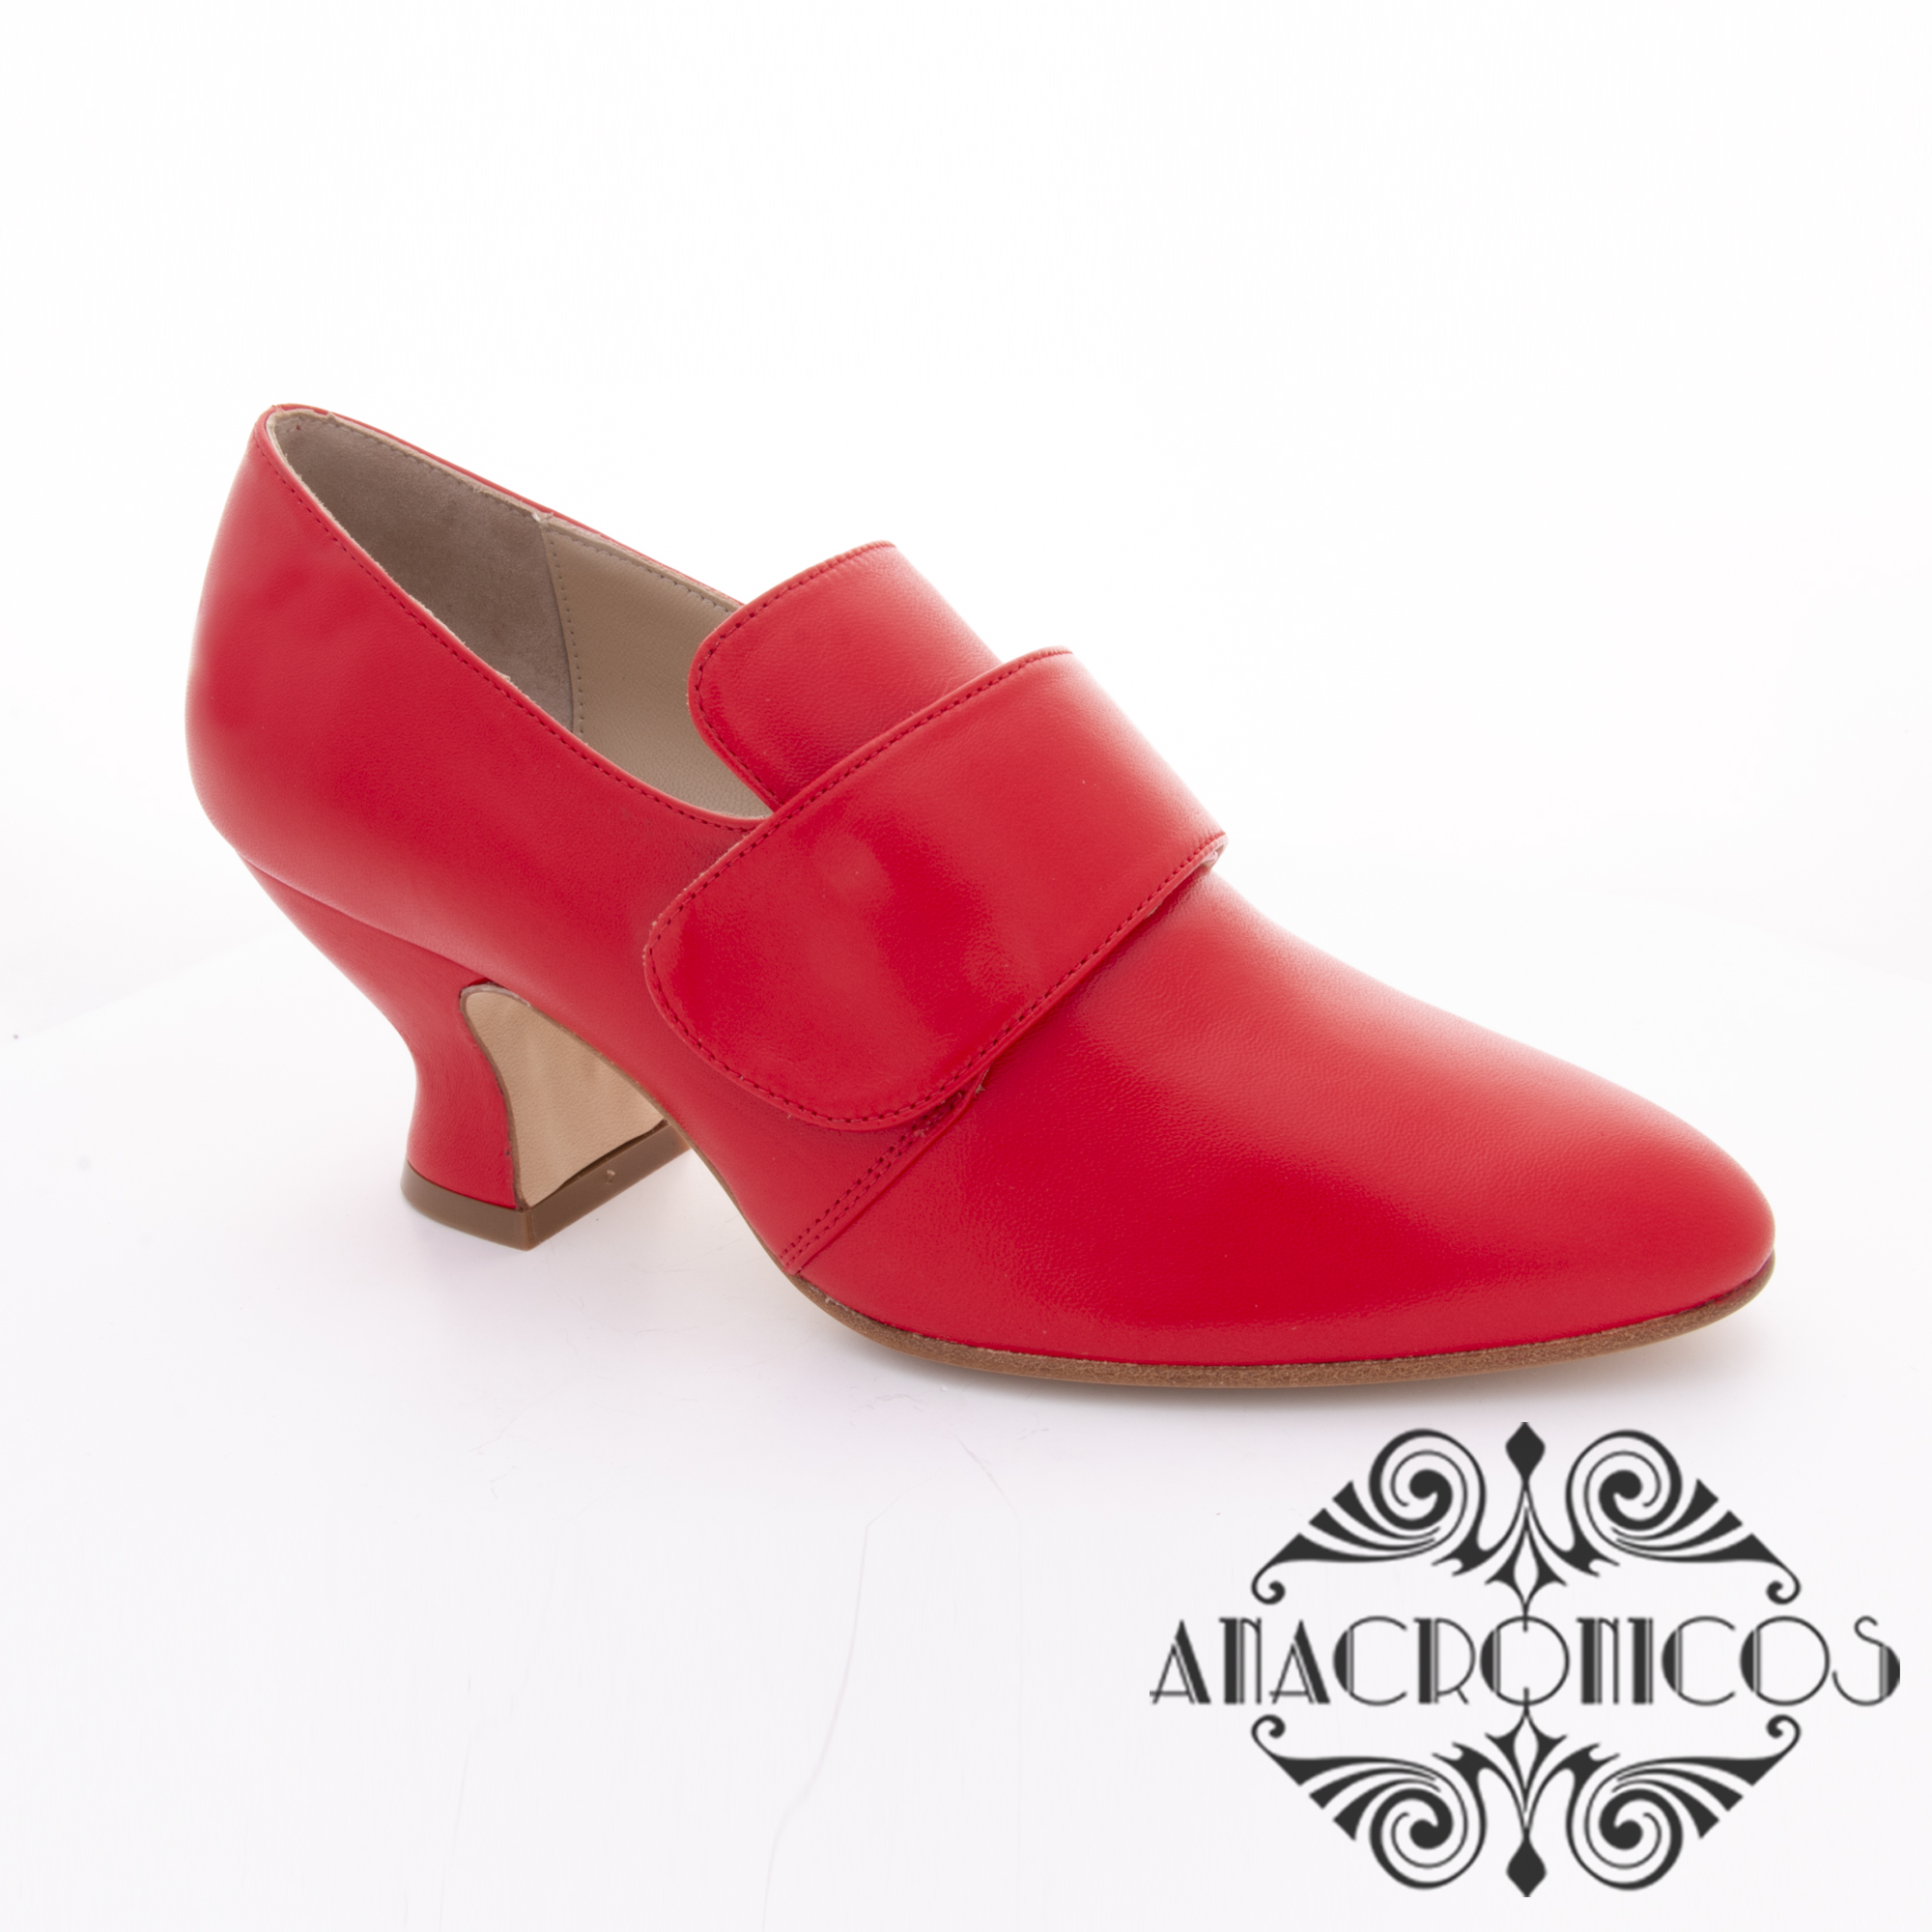 Zapato Mujer 18th Sil.la Piel Roja Anacronicos